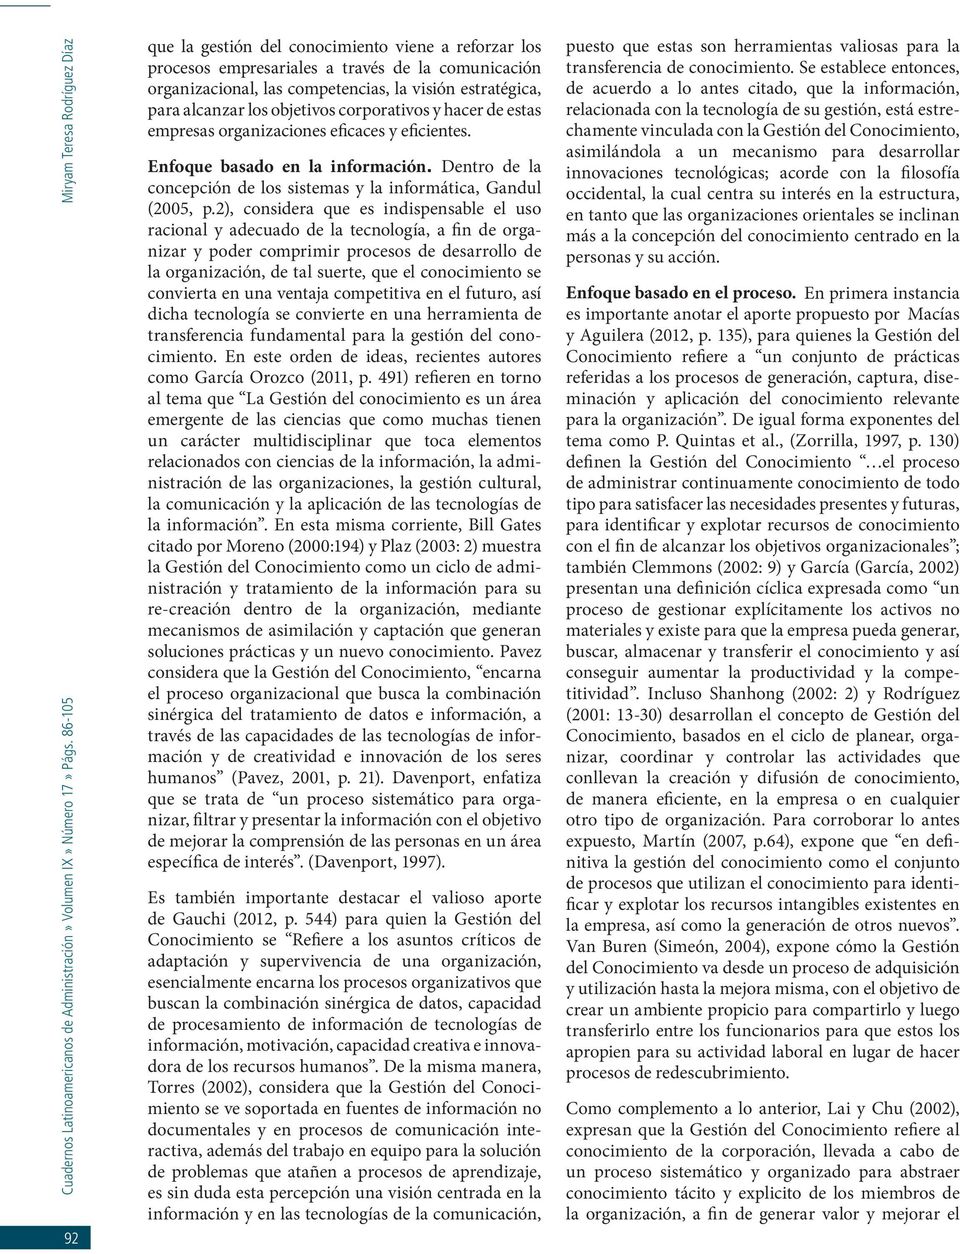 Dentro de la concepción de los sistemas y la informática, Gandul (2005, p.